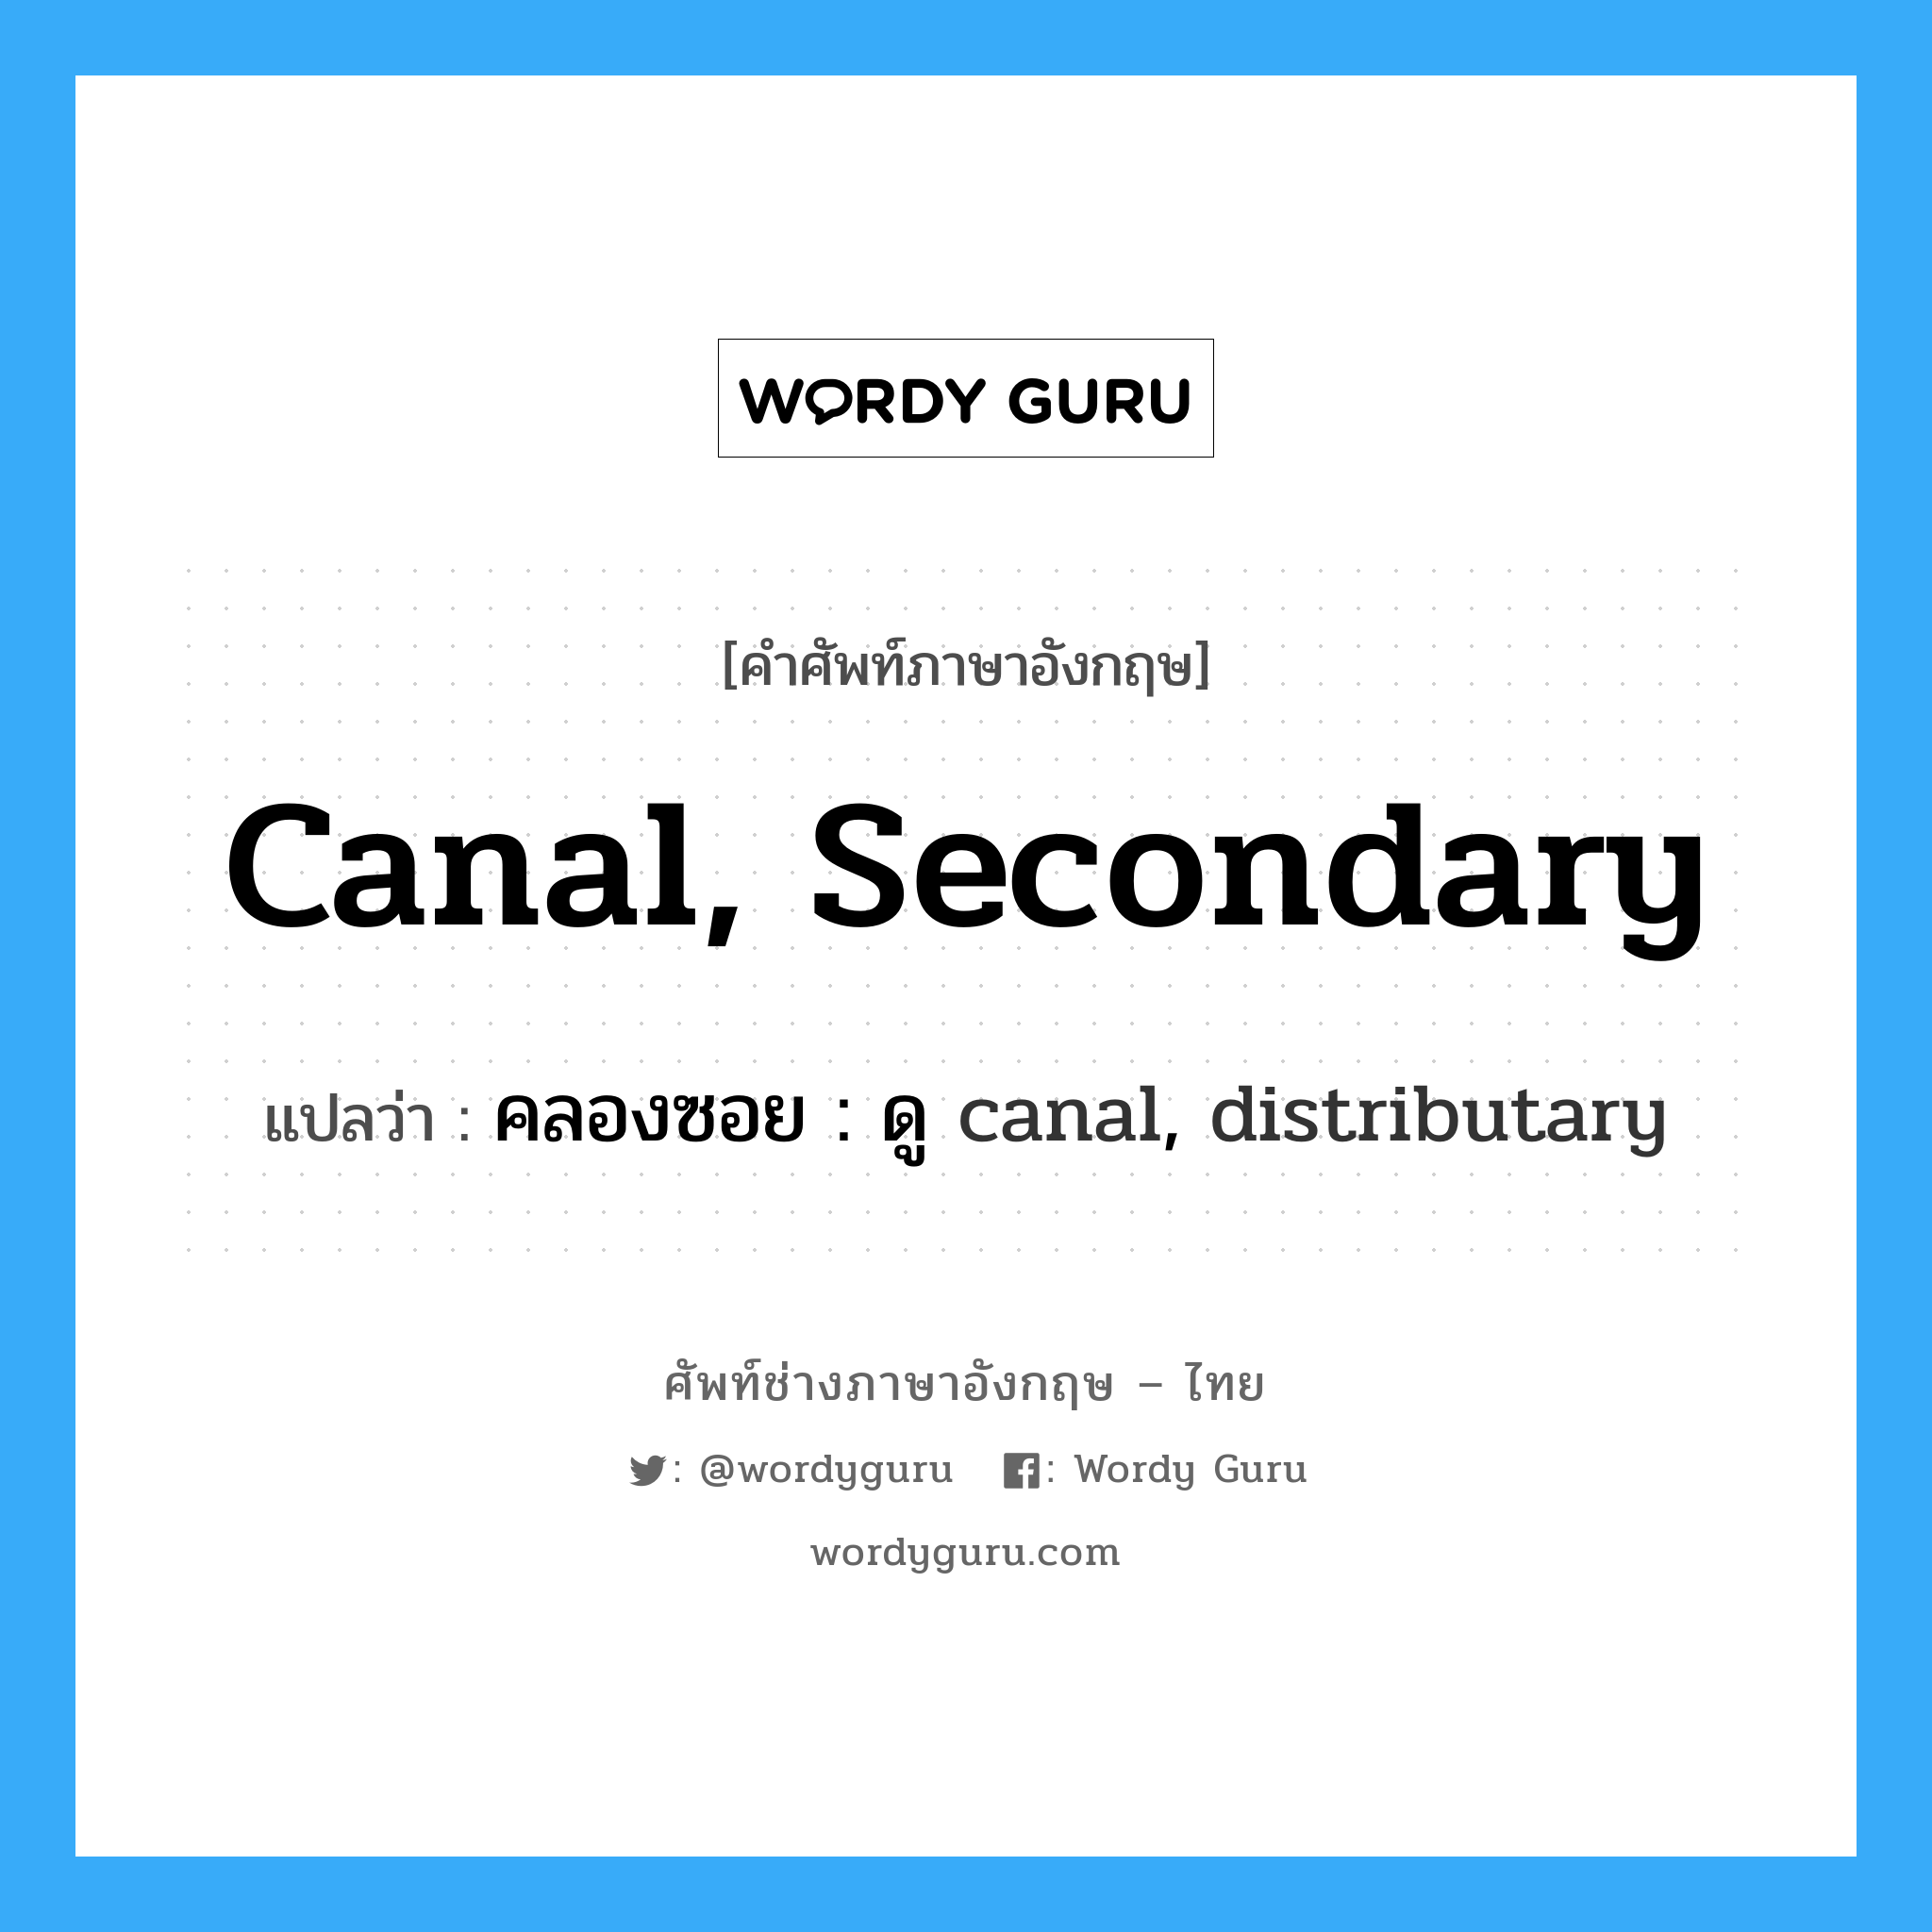 คลองซอย : ดู canal, distributary ภาษาอังกฤษ?, คำศัพท์ช่างภาษาอังกฤษ - ไทย คลองซอย : ดู canal, distributary คำศัพท์ภาษาอังกฤษ คลองซอย : ดู canal, distributary แปลว่า canal, secondary